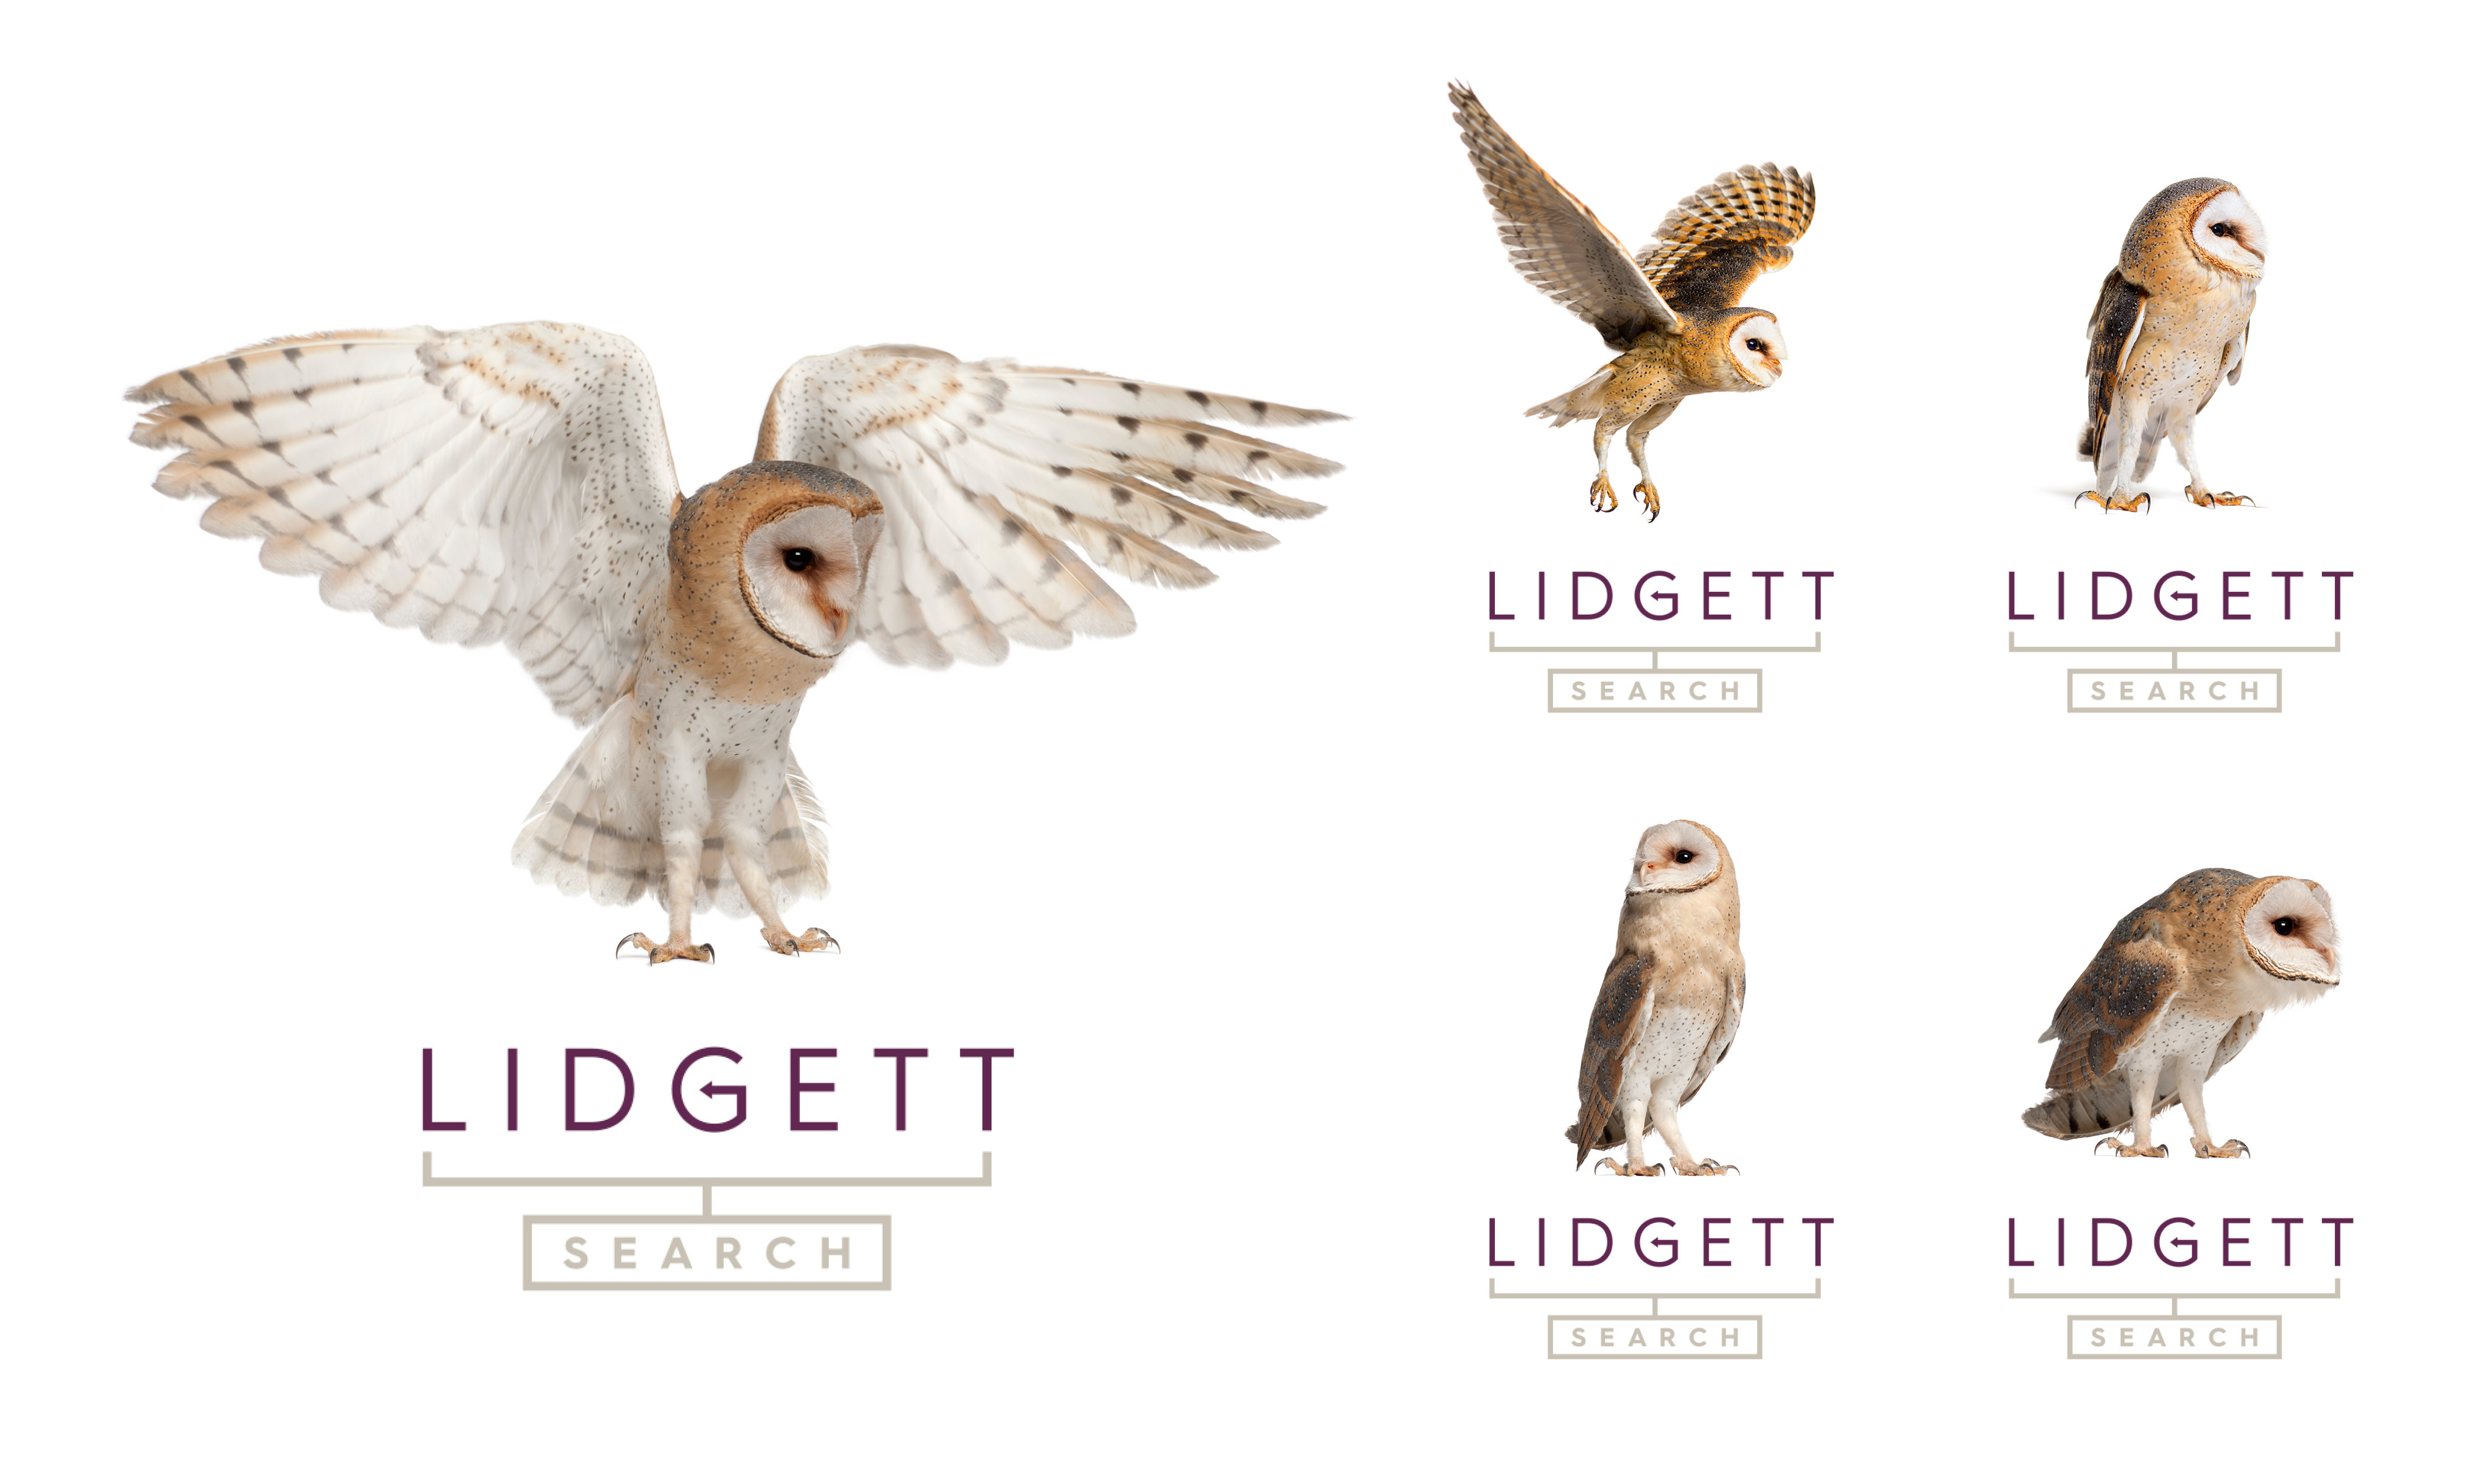 Lidgett Search branding & website by Neon (logo variants)